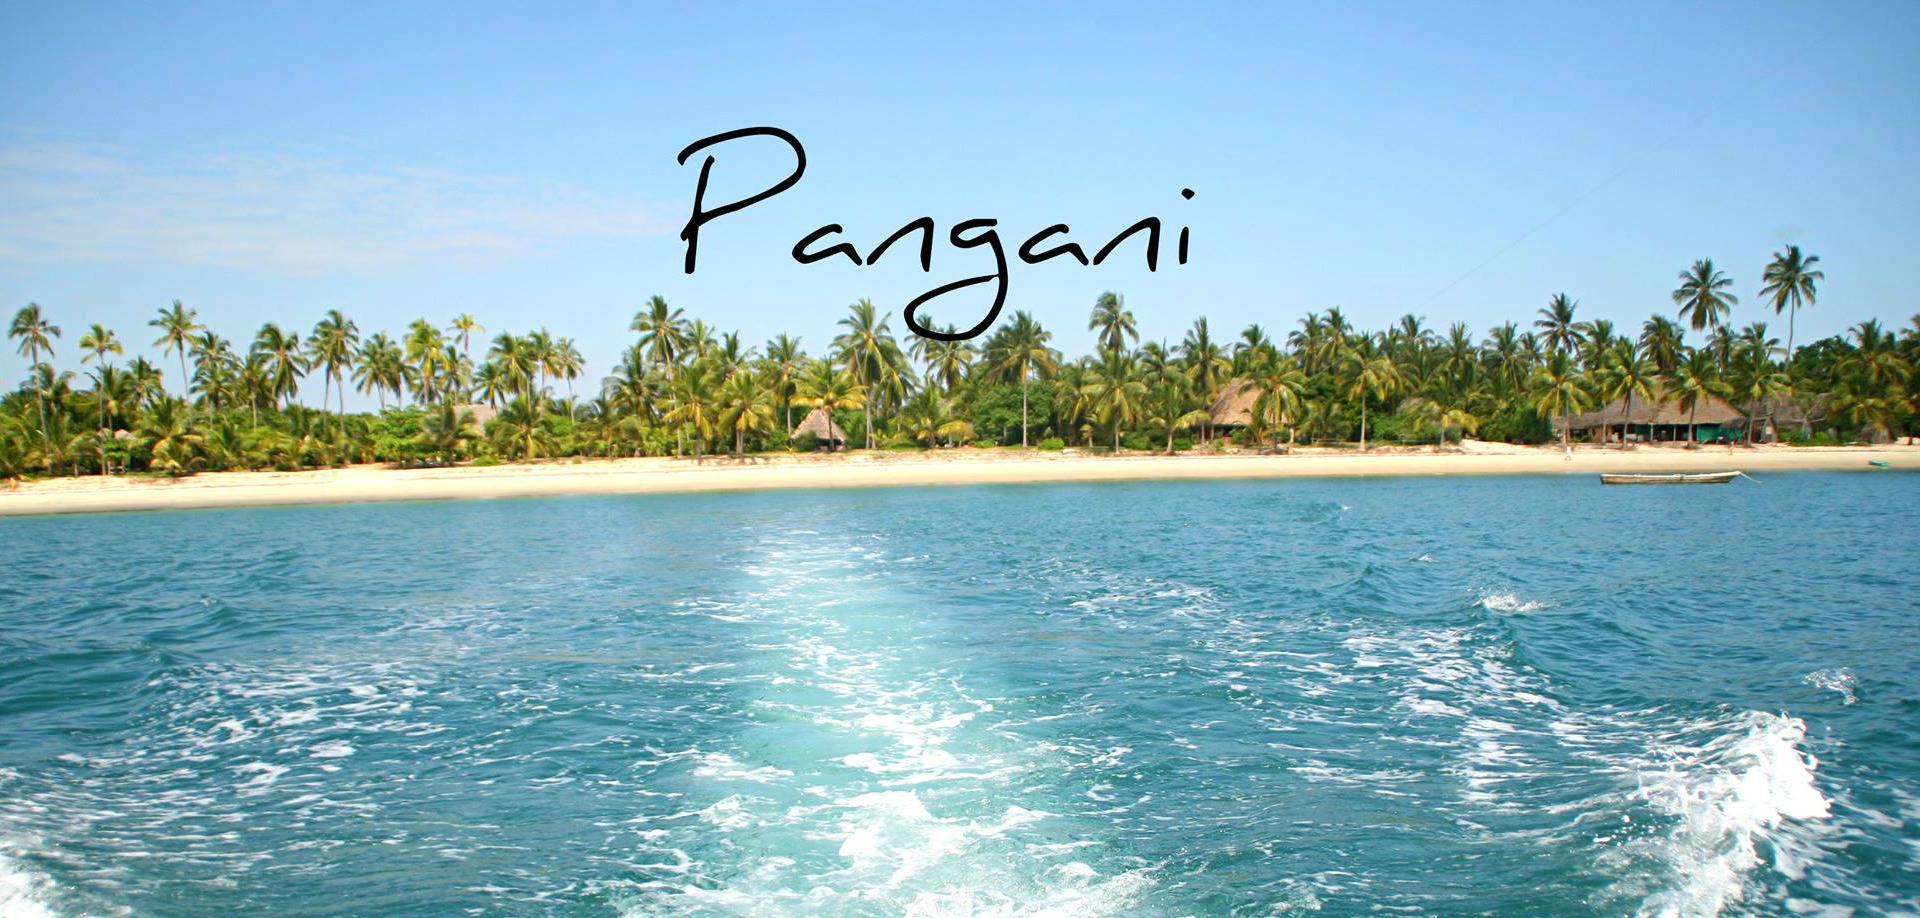 PANGANI BEACH HOLIDAY